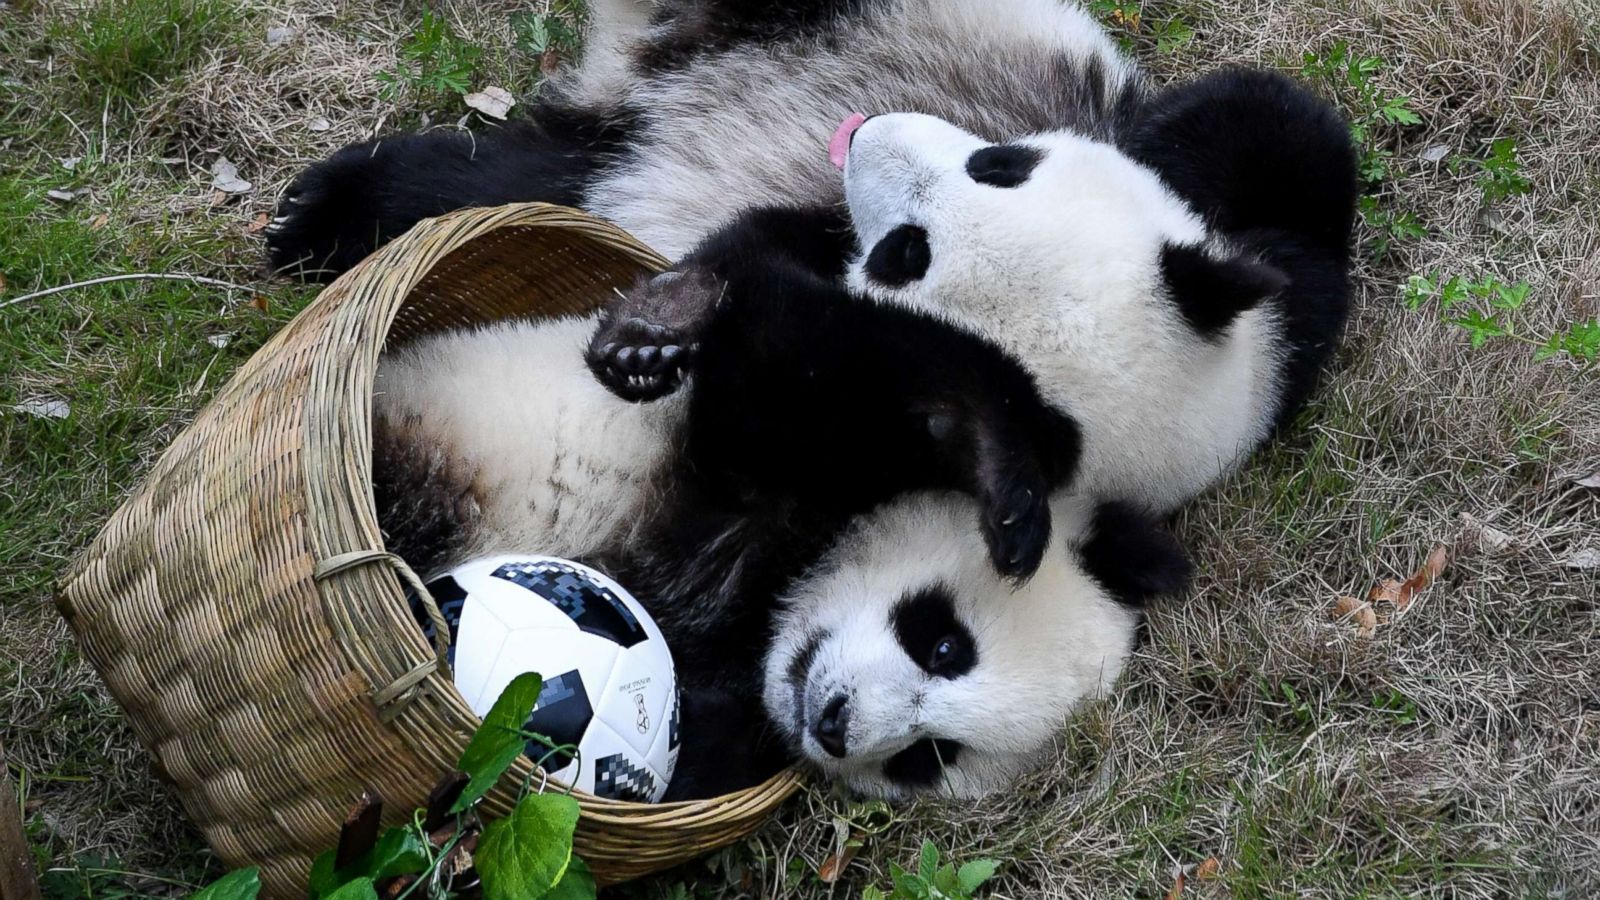 Giant Pandas Playing